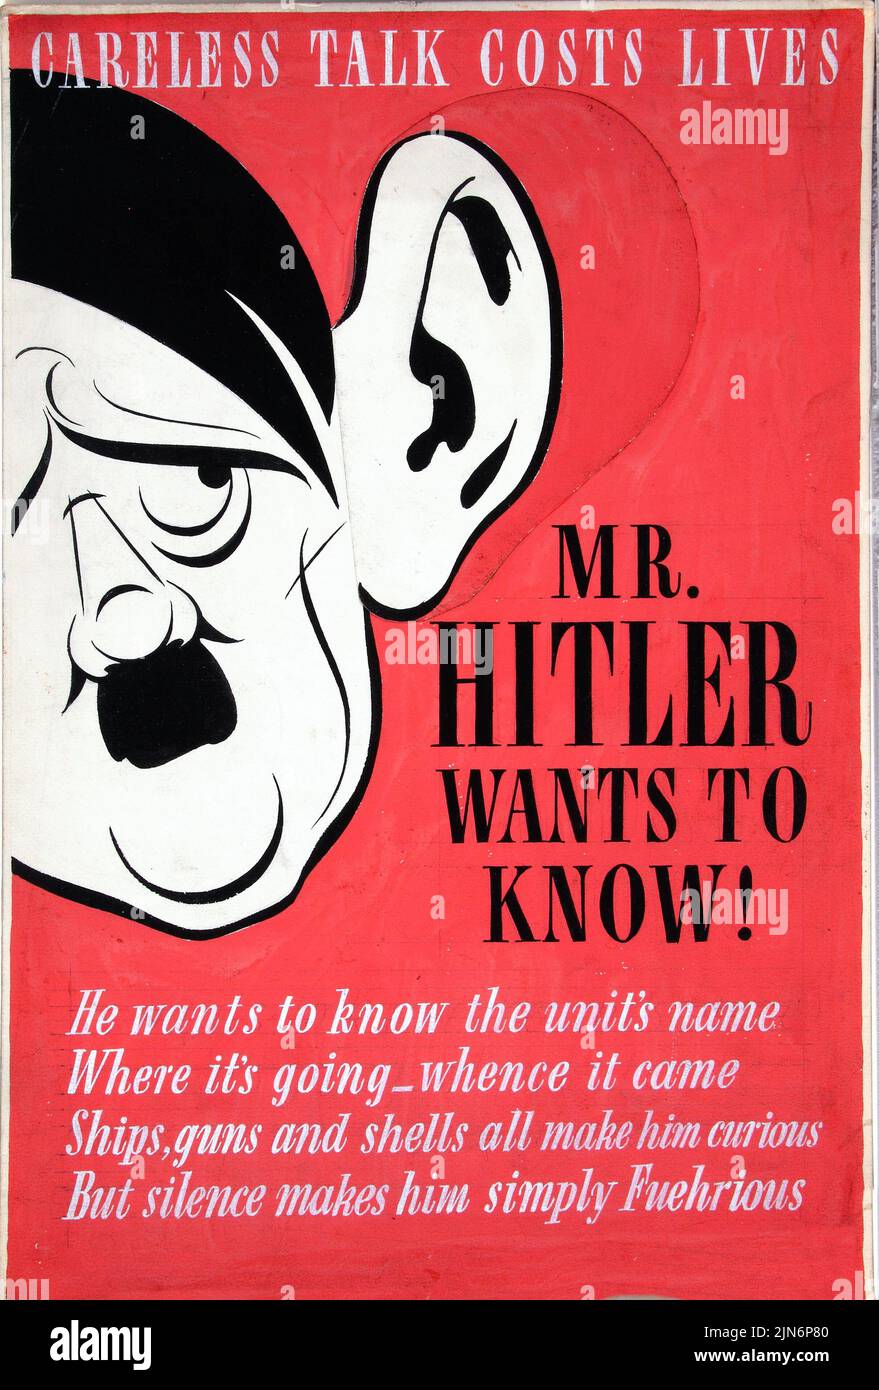 Parlare senza cauto costa vite umane. Il signor Hitler vuole saperlo! (1939 - 1946) manifesto dell'era britannica della seconda guerra mondiale Foto Stock